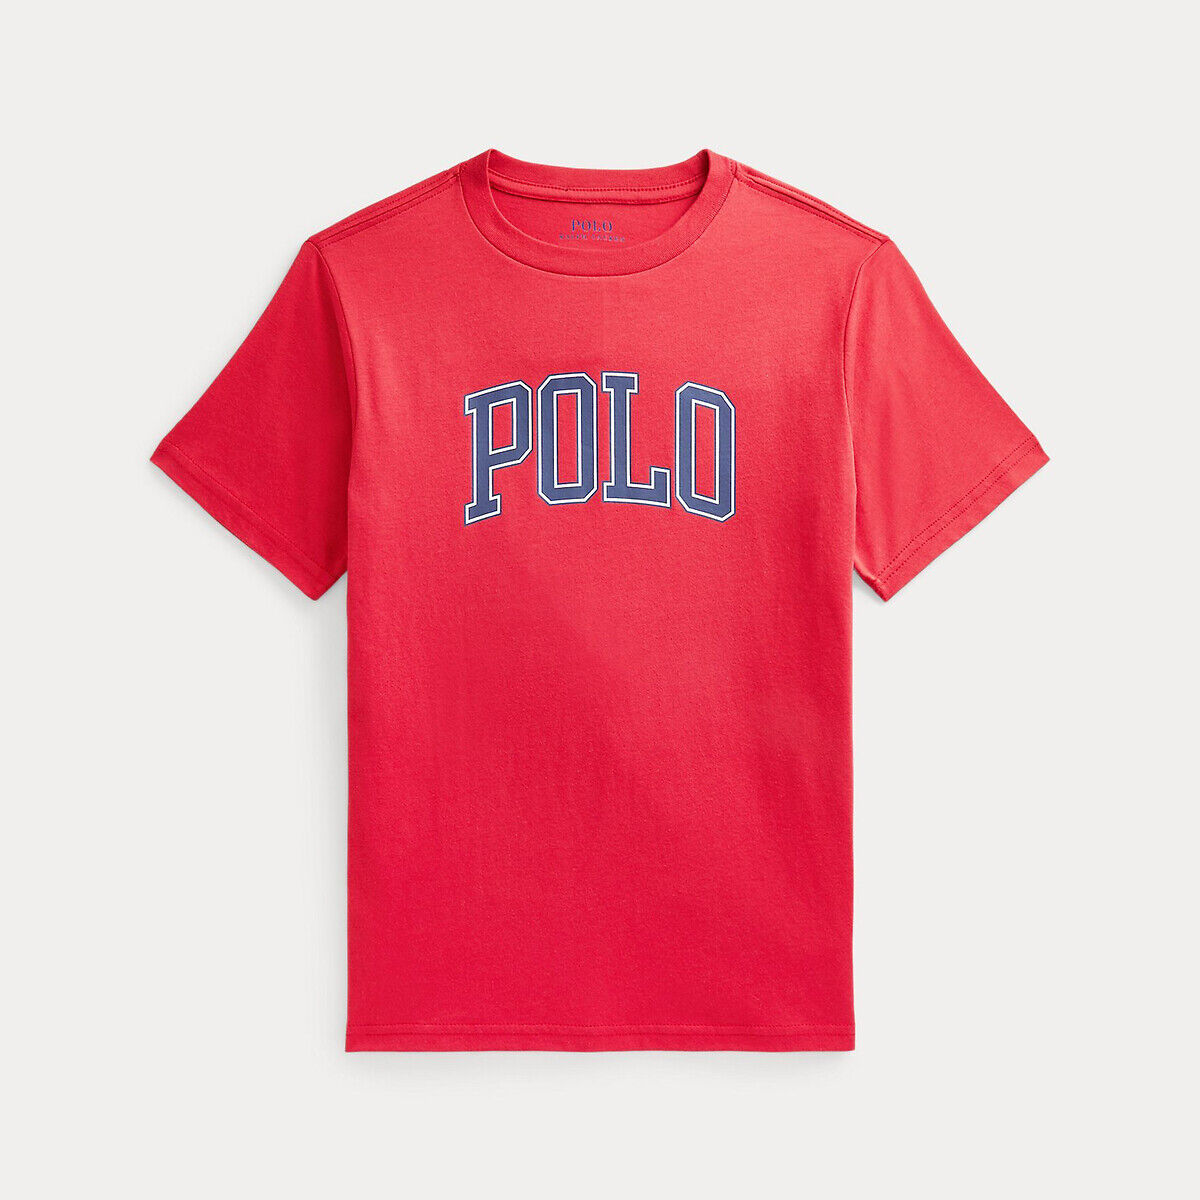 POLO RALPH LAUREN T-Shirt, 8-16 Jahre BLAU;ROT